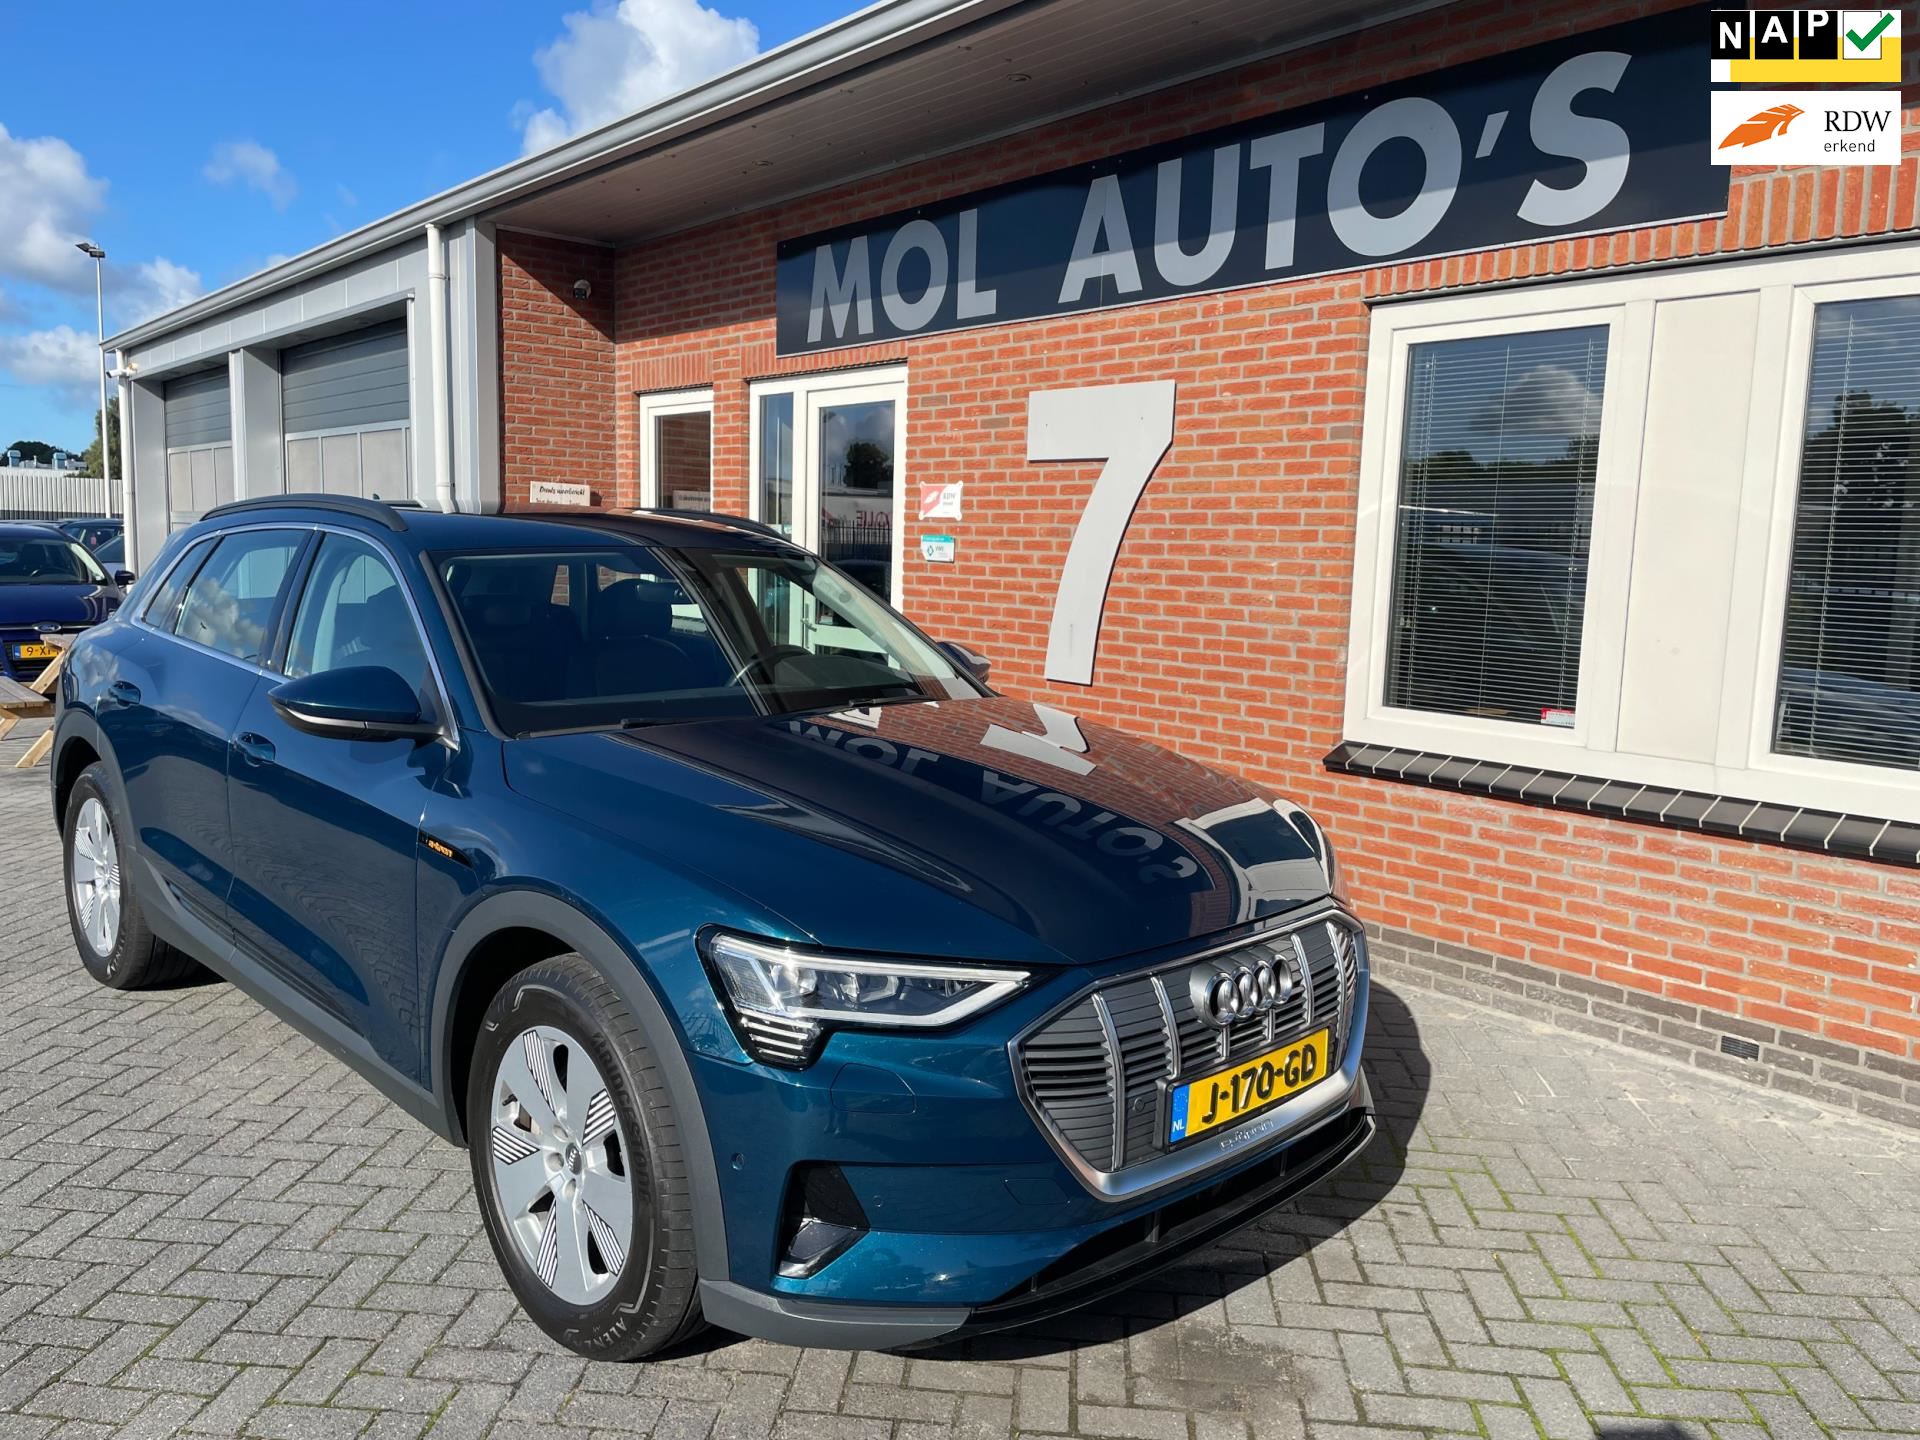 Audi E-tron occasion - Mol-Auto's